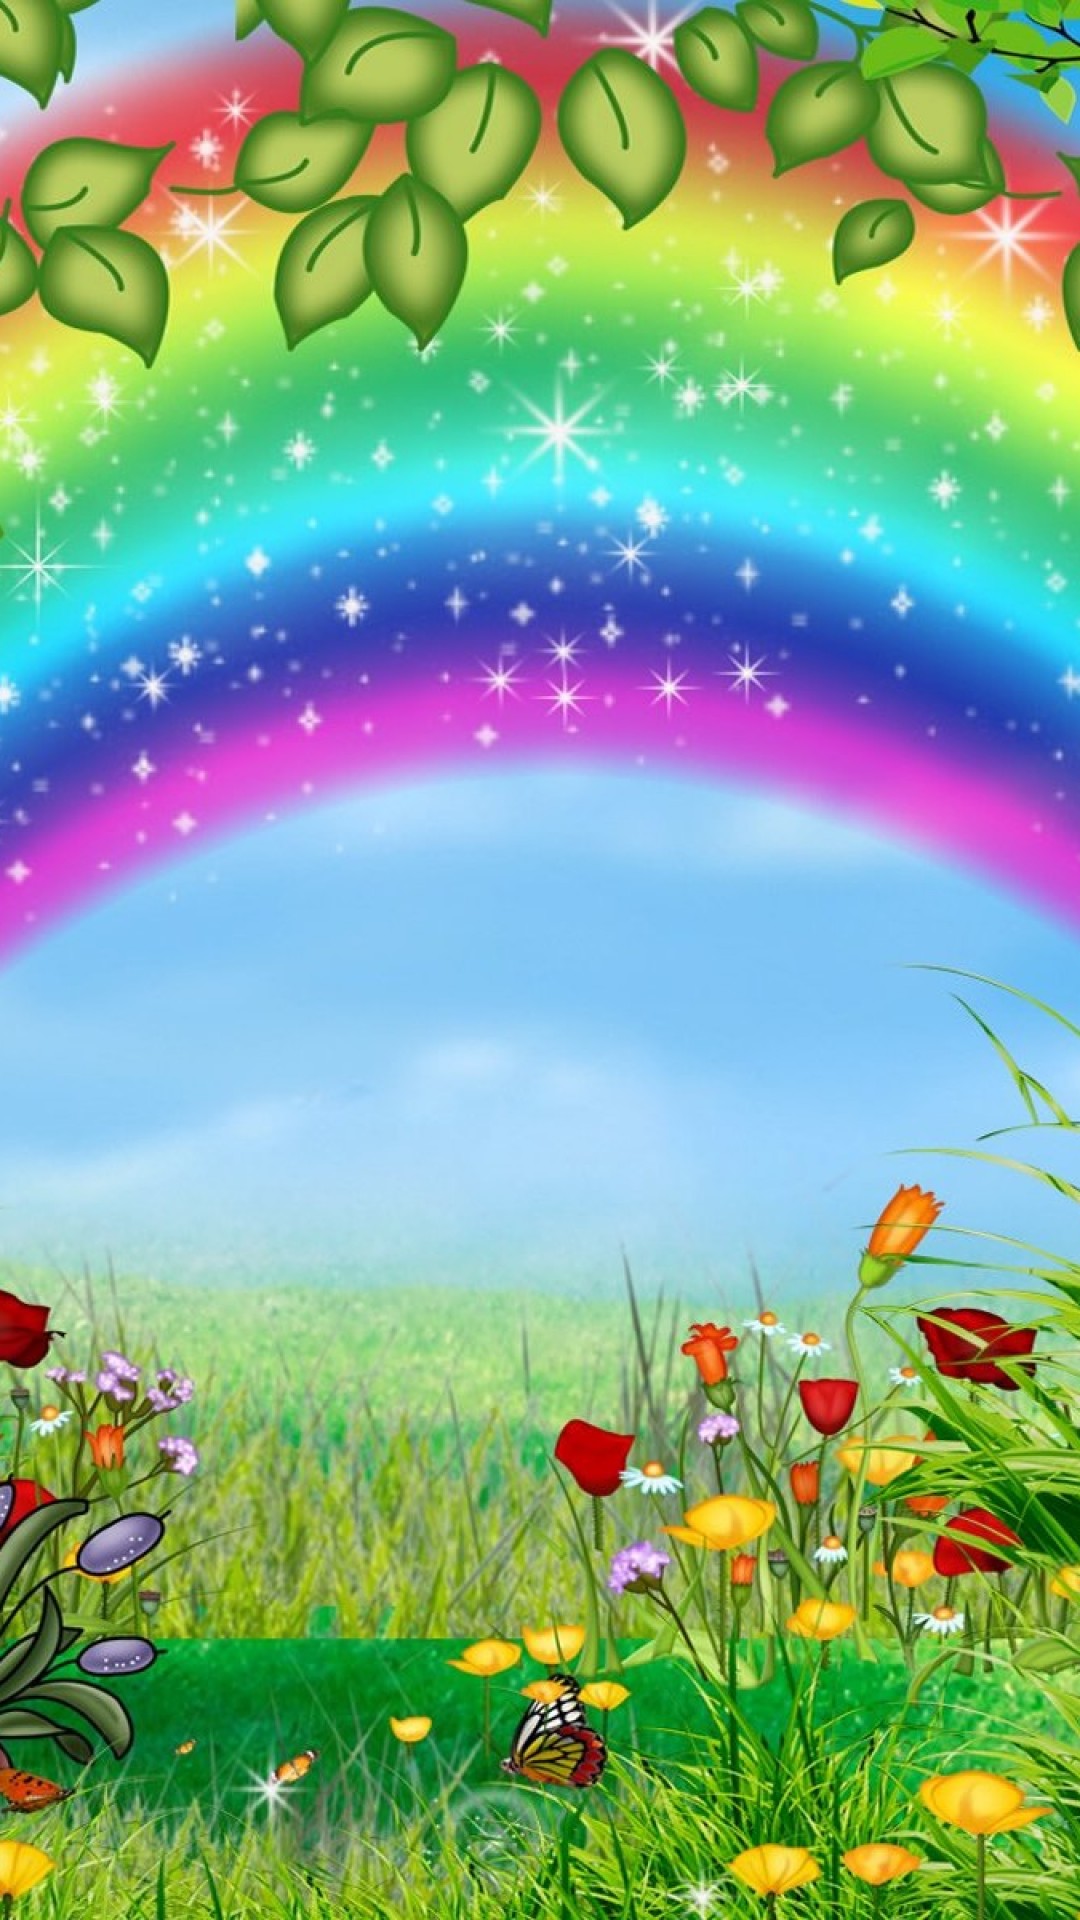 美しい虹の絵 かわいいiphone壁紙 Iphone11 スマホ壁紙 待受画像ギャラリー